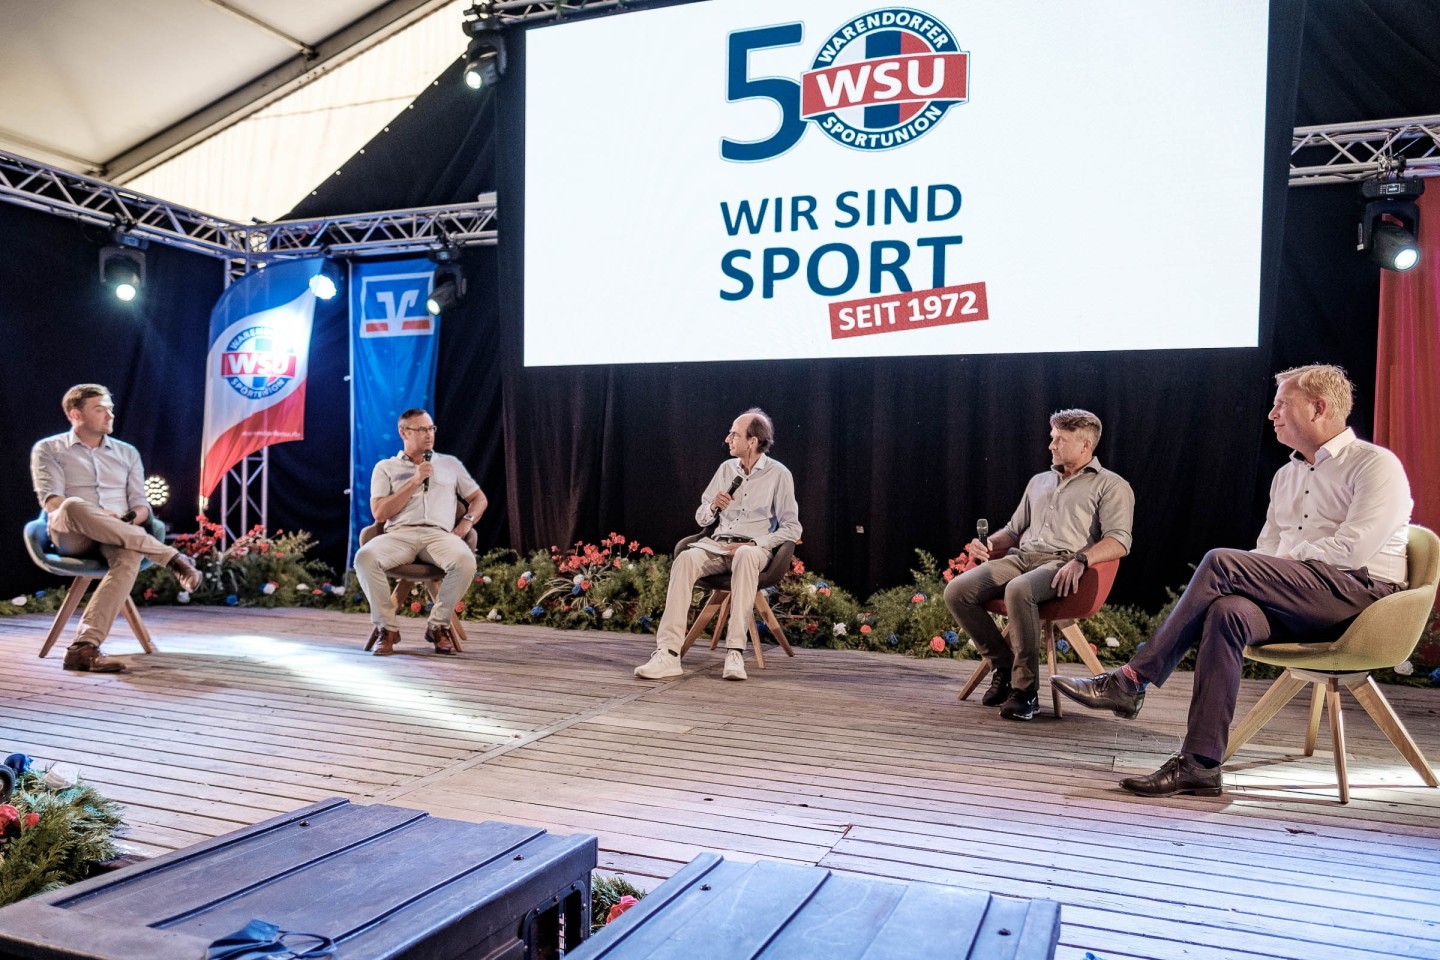 WSU,Warendorfer Sportunion,Warendorf,Ralf Sawukytis,Fußball,Handball,Laufen,Jubiläum,50 Jahre,